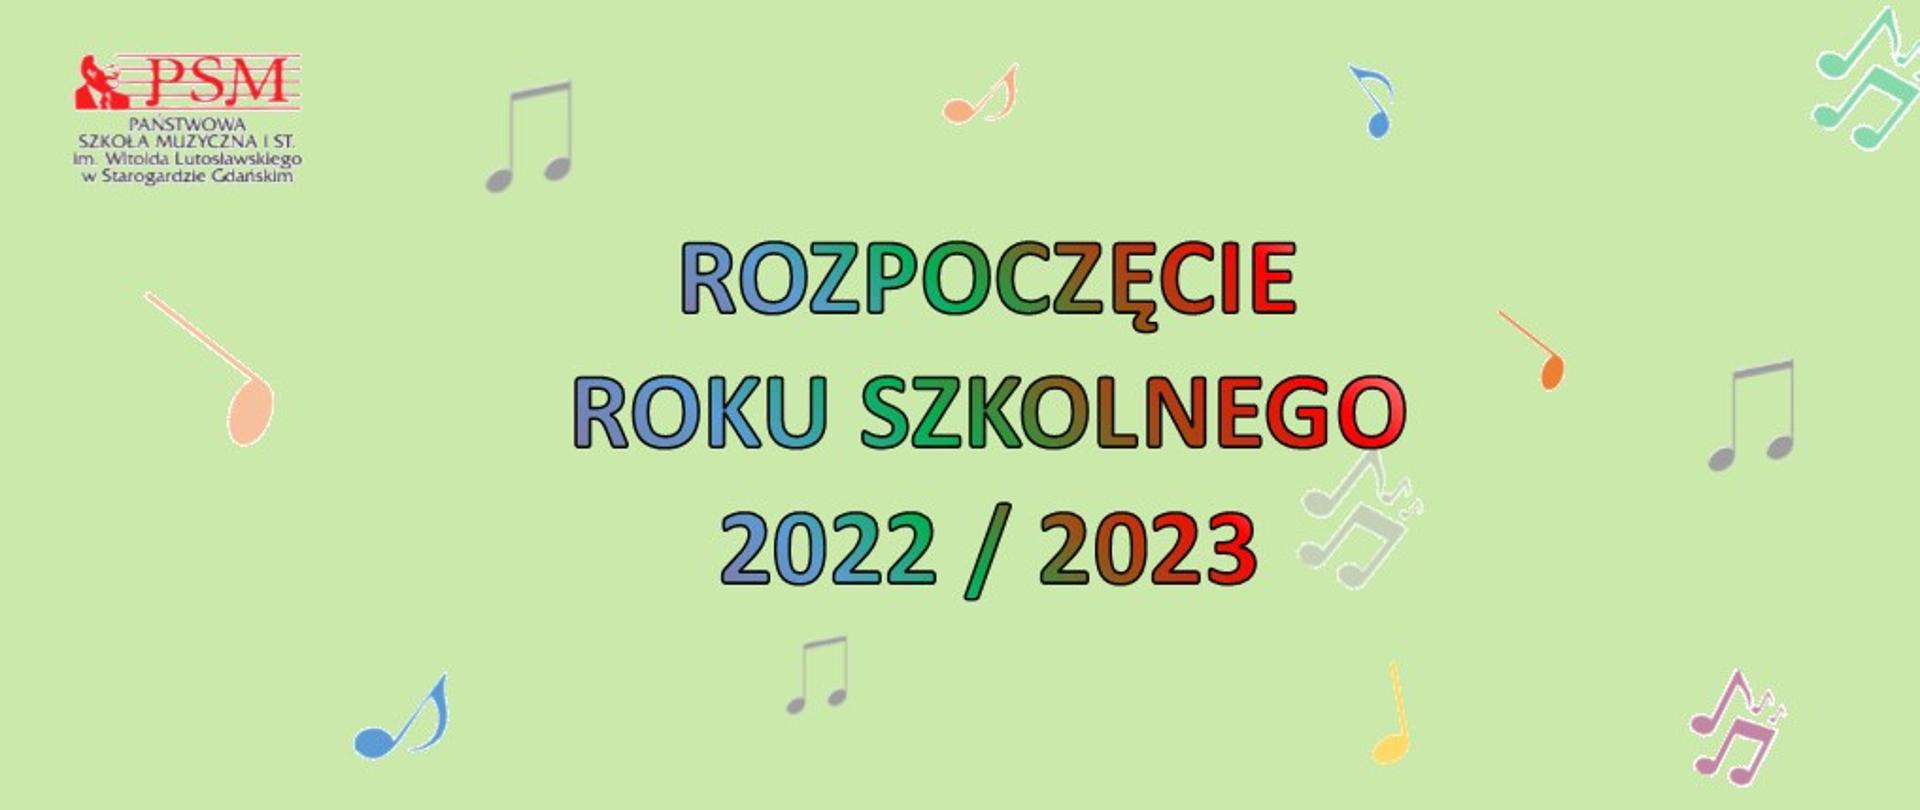 Baner informujący o rozpoczęciu roku szkolnego 2022/2023, z napisem rozpoczęcie roku szkolnego 2022/2023 na zielonym tle z kolorowymi nutami. 